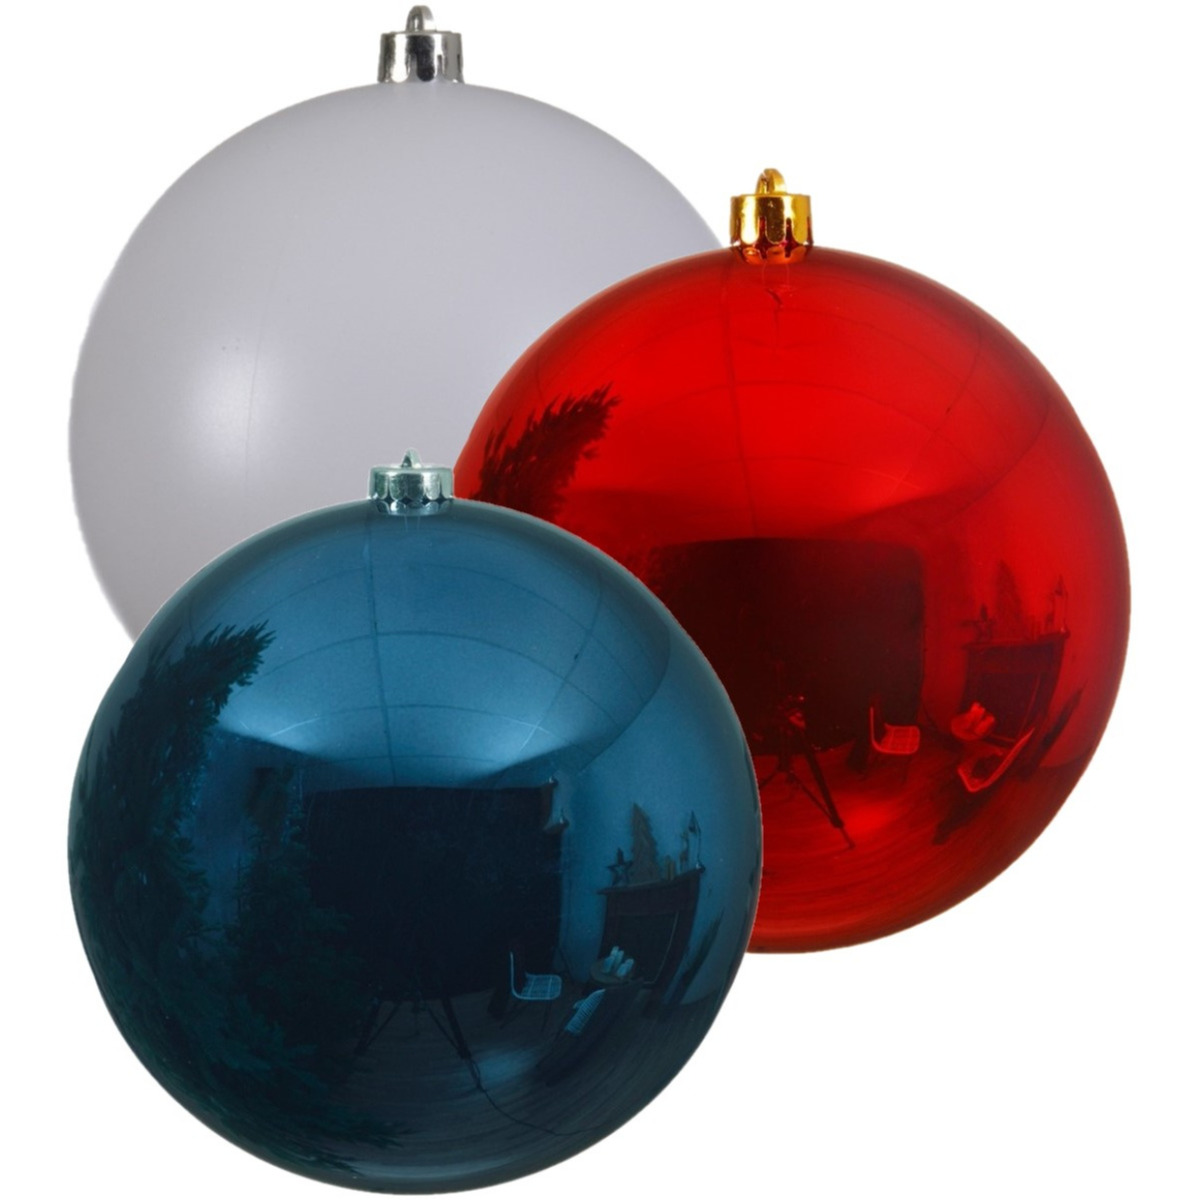 Kerstversieringen set van 6x grote kunststof kerstballen blauw-wit-rood 14 cm glans - 2x per kleur